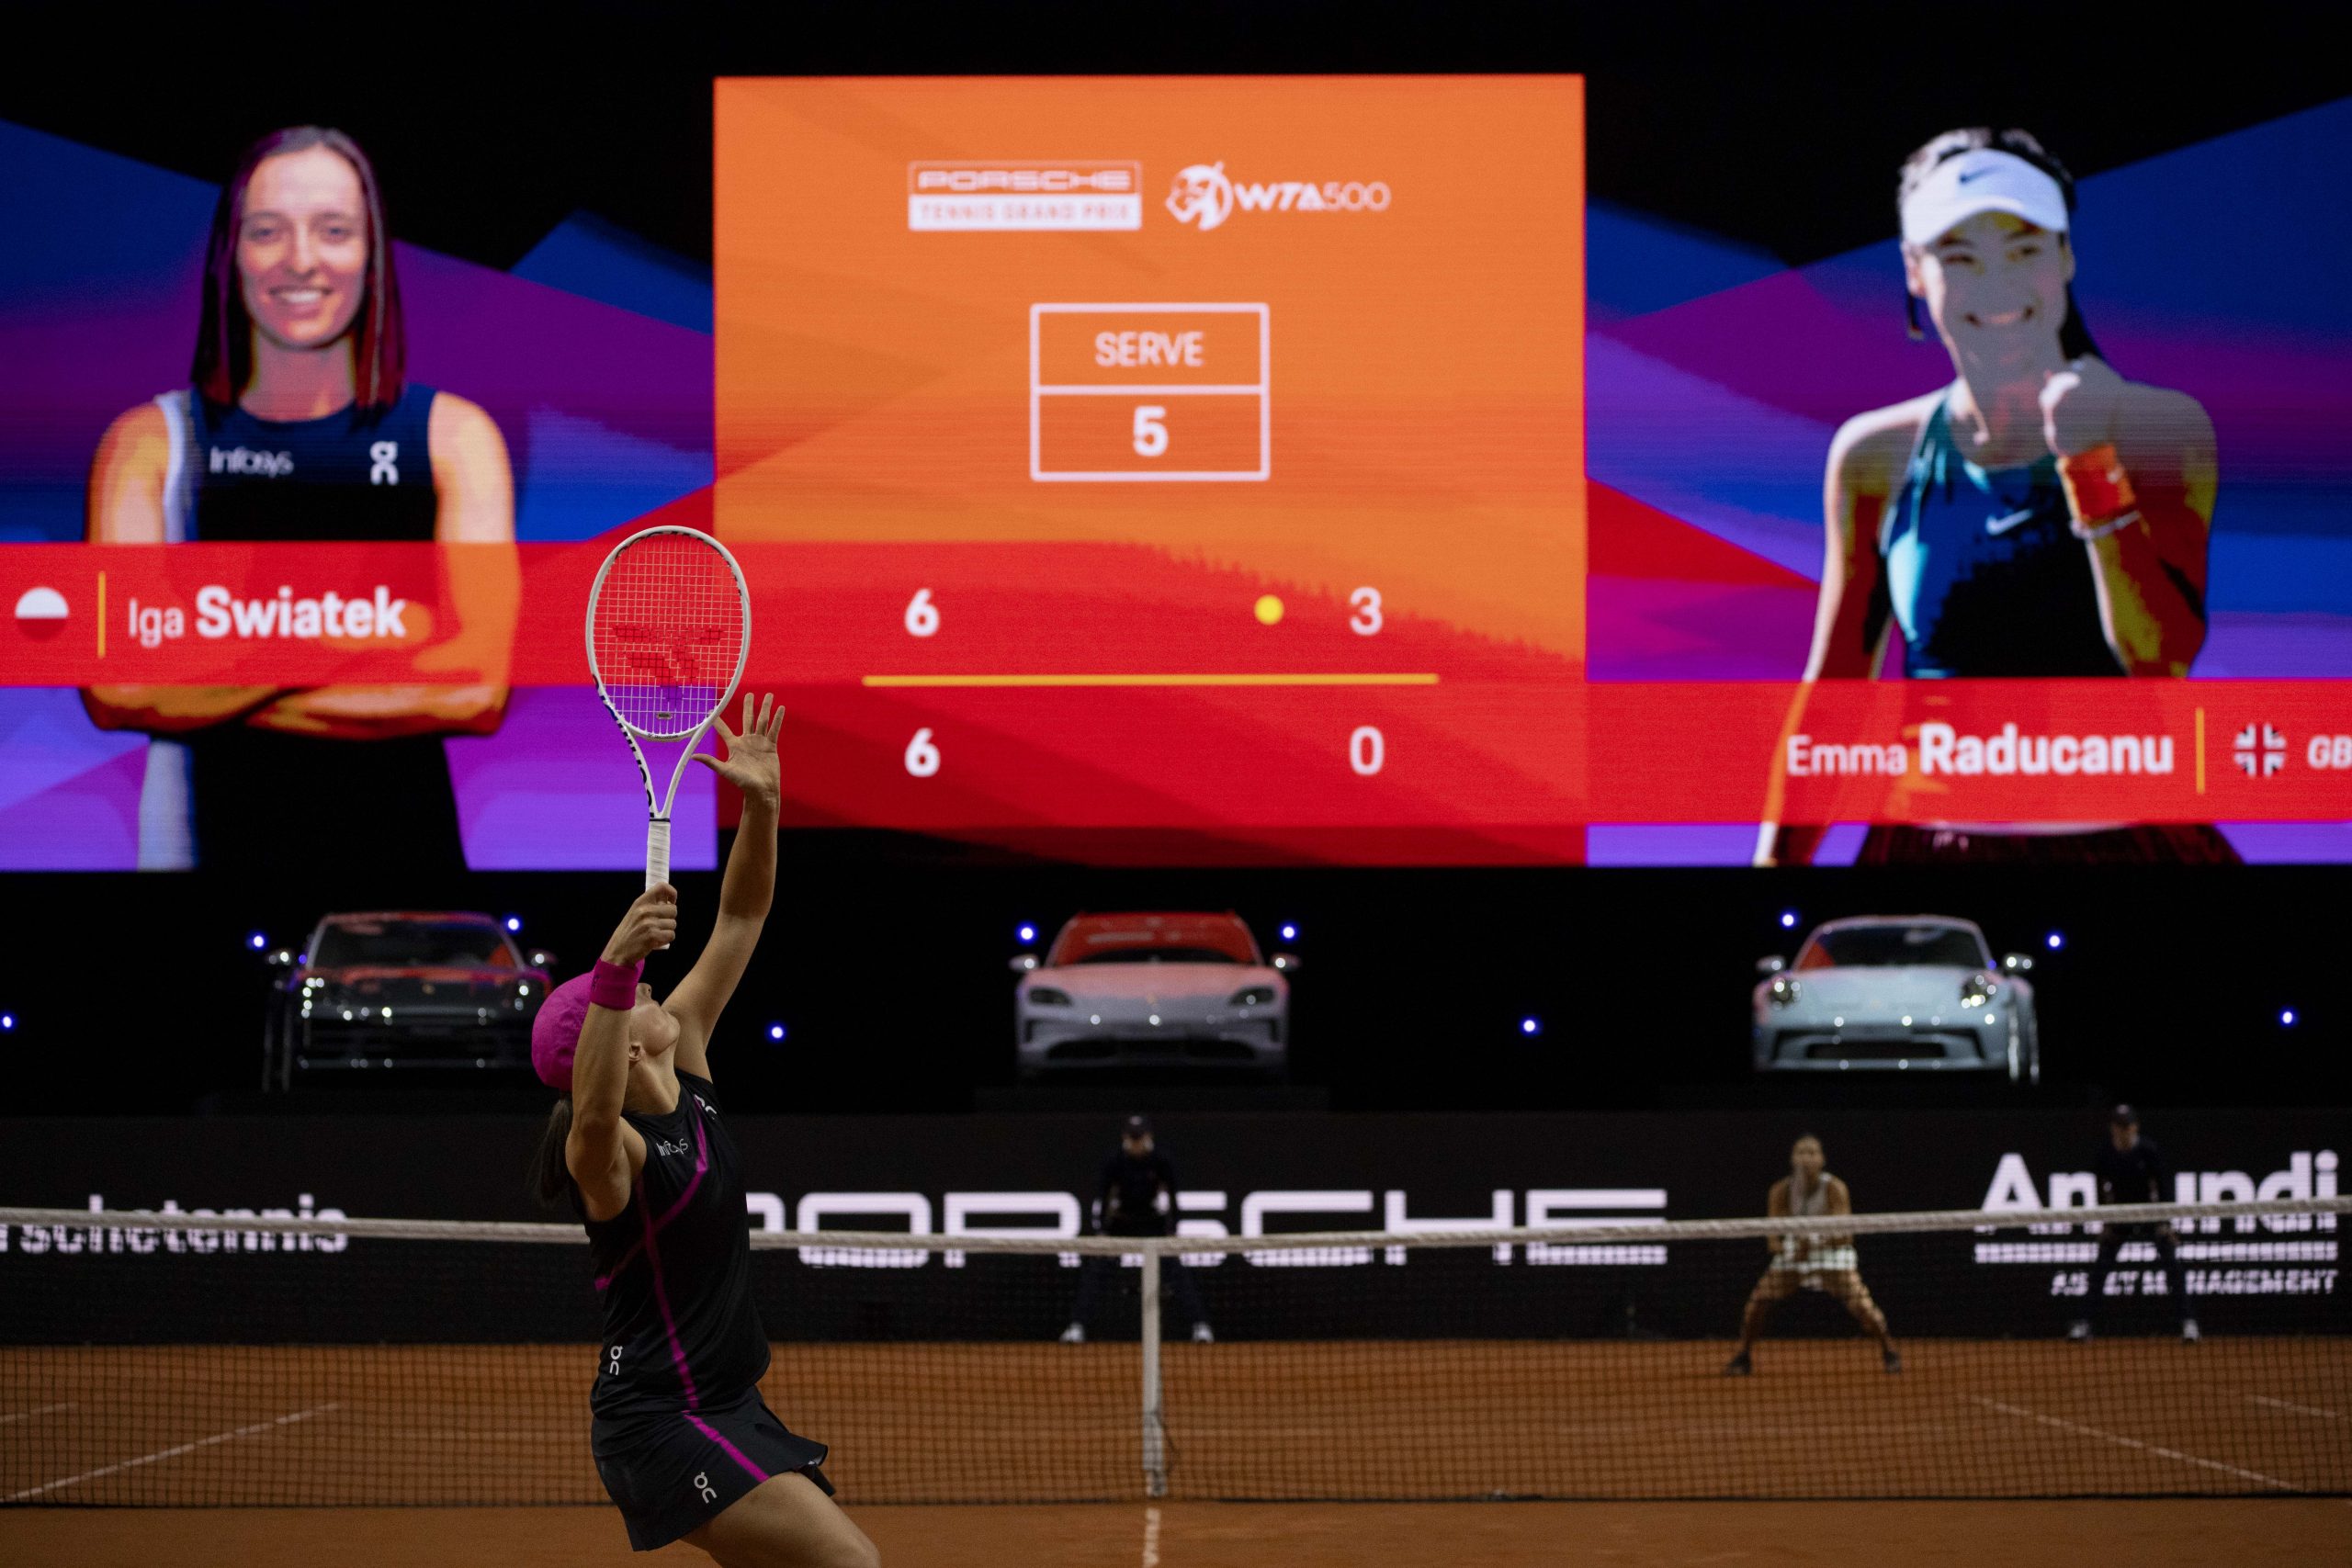 La fièvre du tennis à la Porsche Arena de Stuttgart : l’action WTA à son apogée